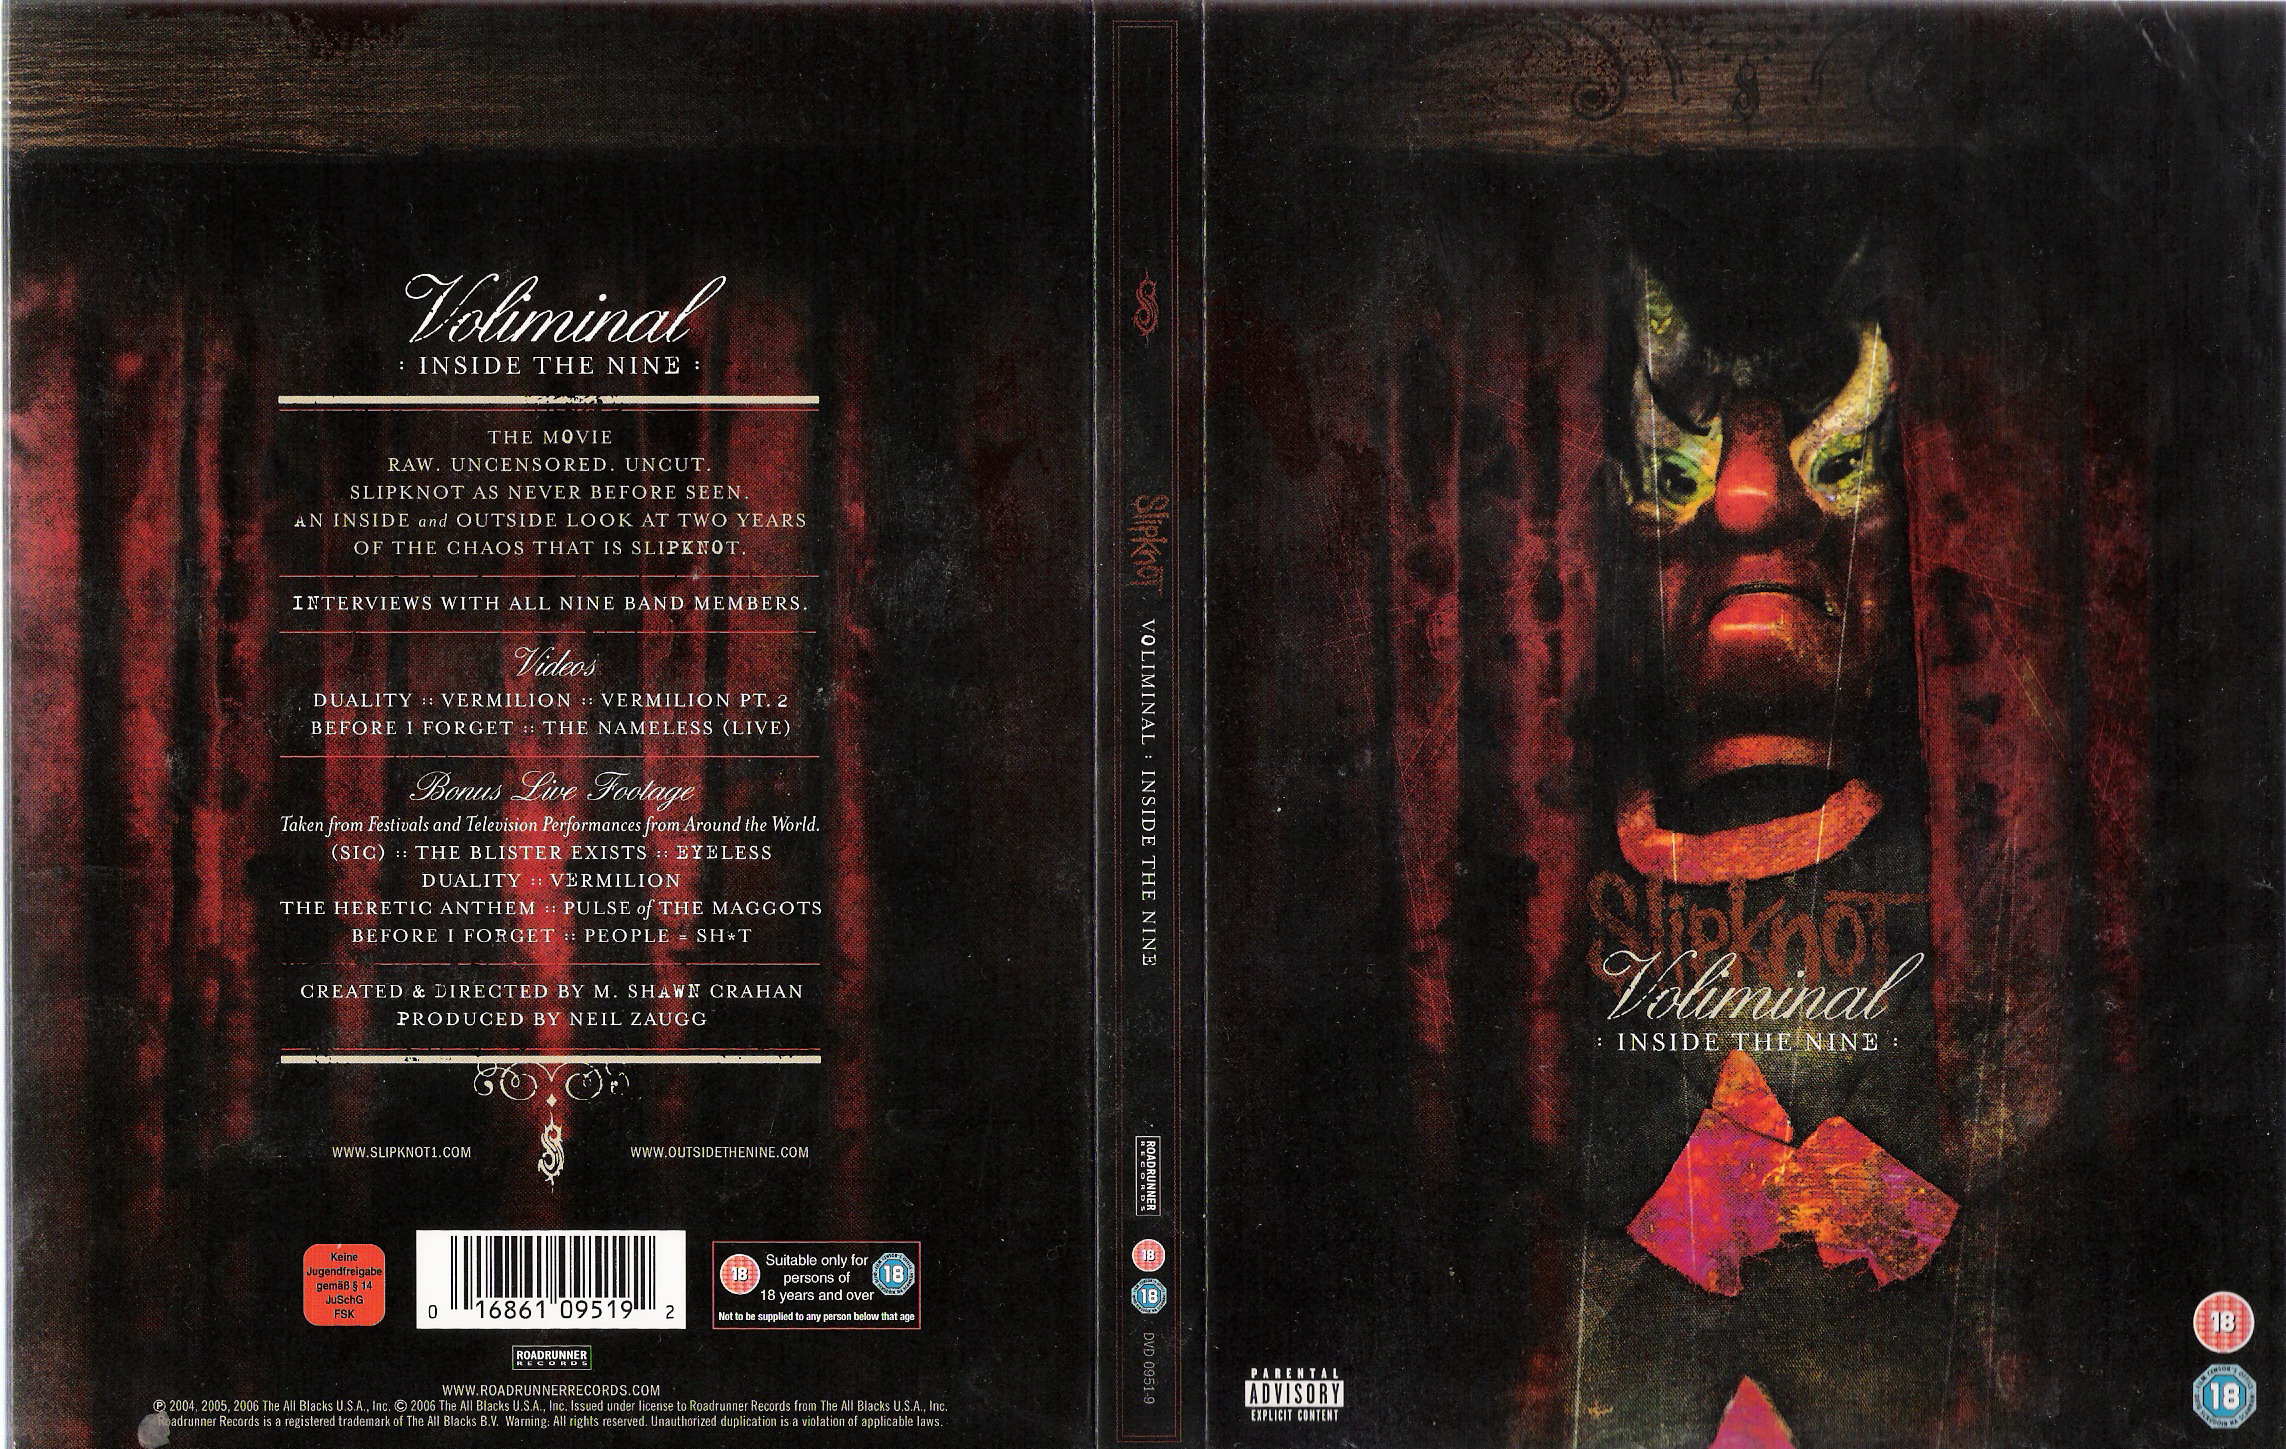 Jaquette DVD Slipknot voliminal inside the nine